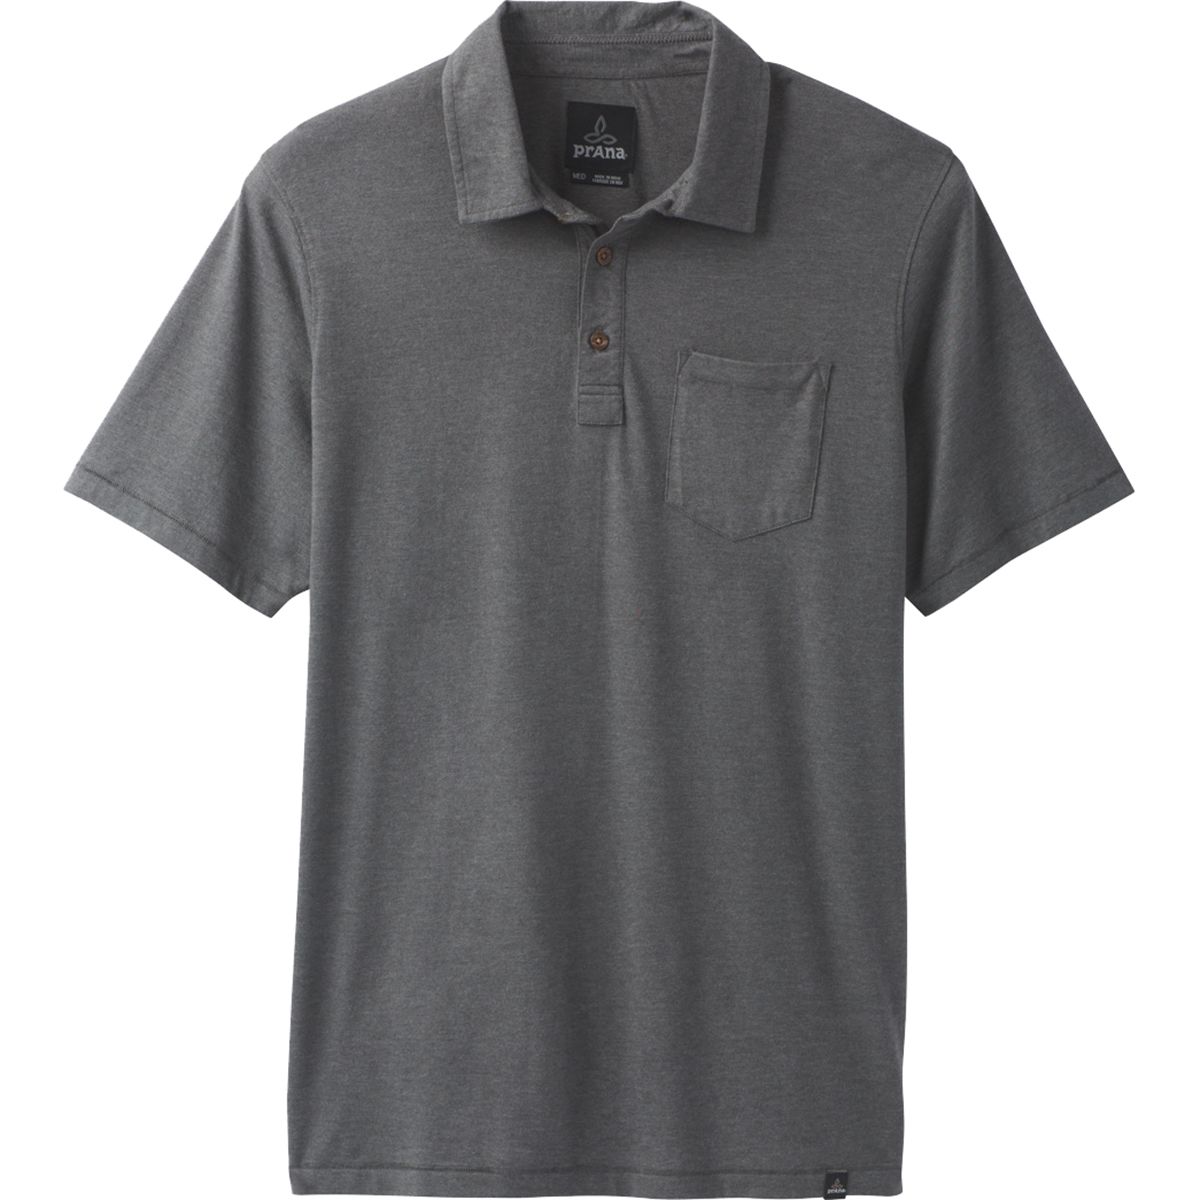 prAna Tall Polo Shirt - Men's - Clothing